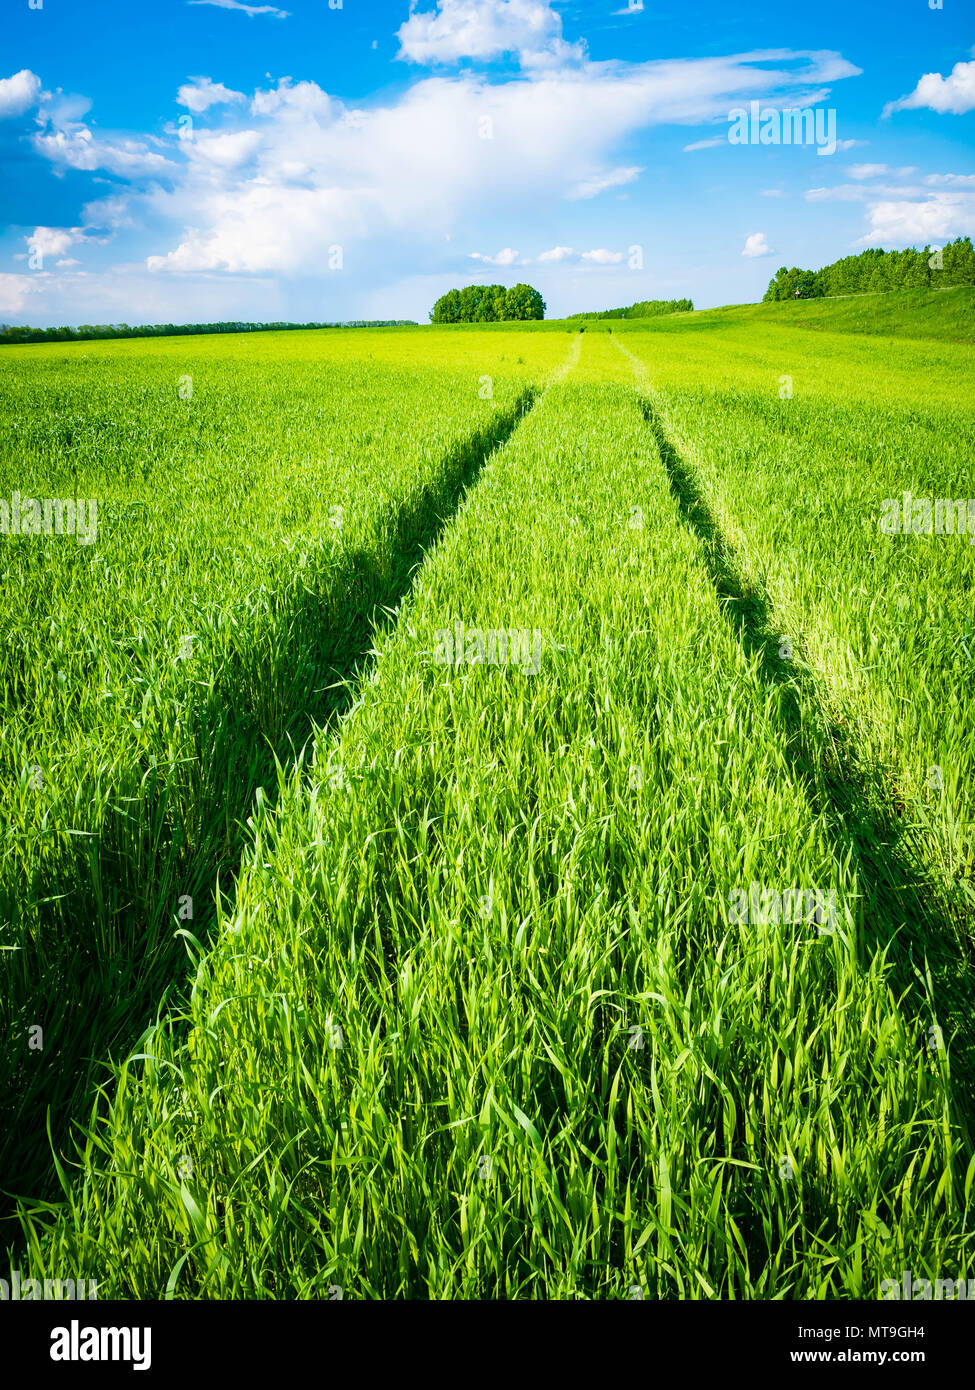 Champ de blé vert. Road dans un champ de blé vert. Des traces de transport agricole sur l'herbe sur une journée ensoleillée. Banque D'Images